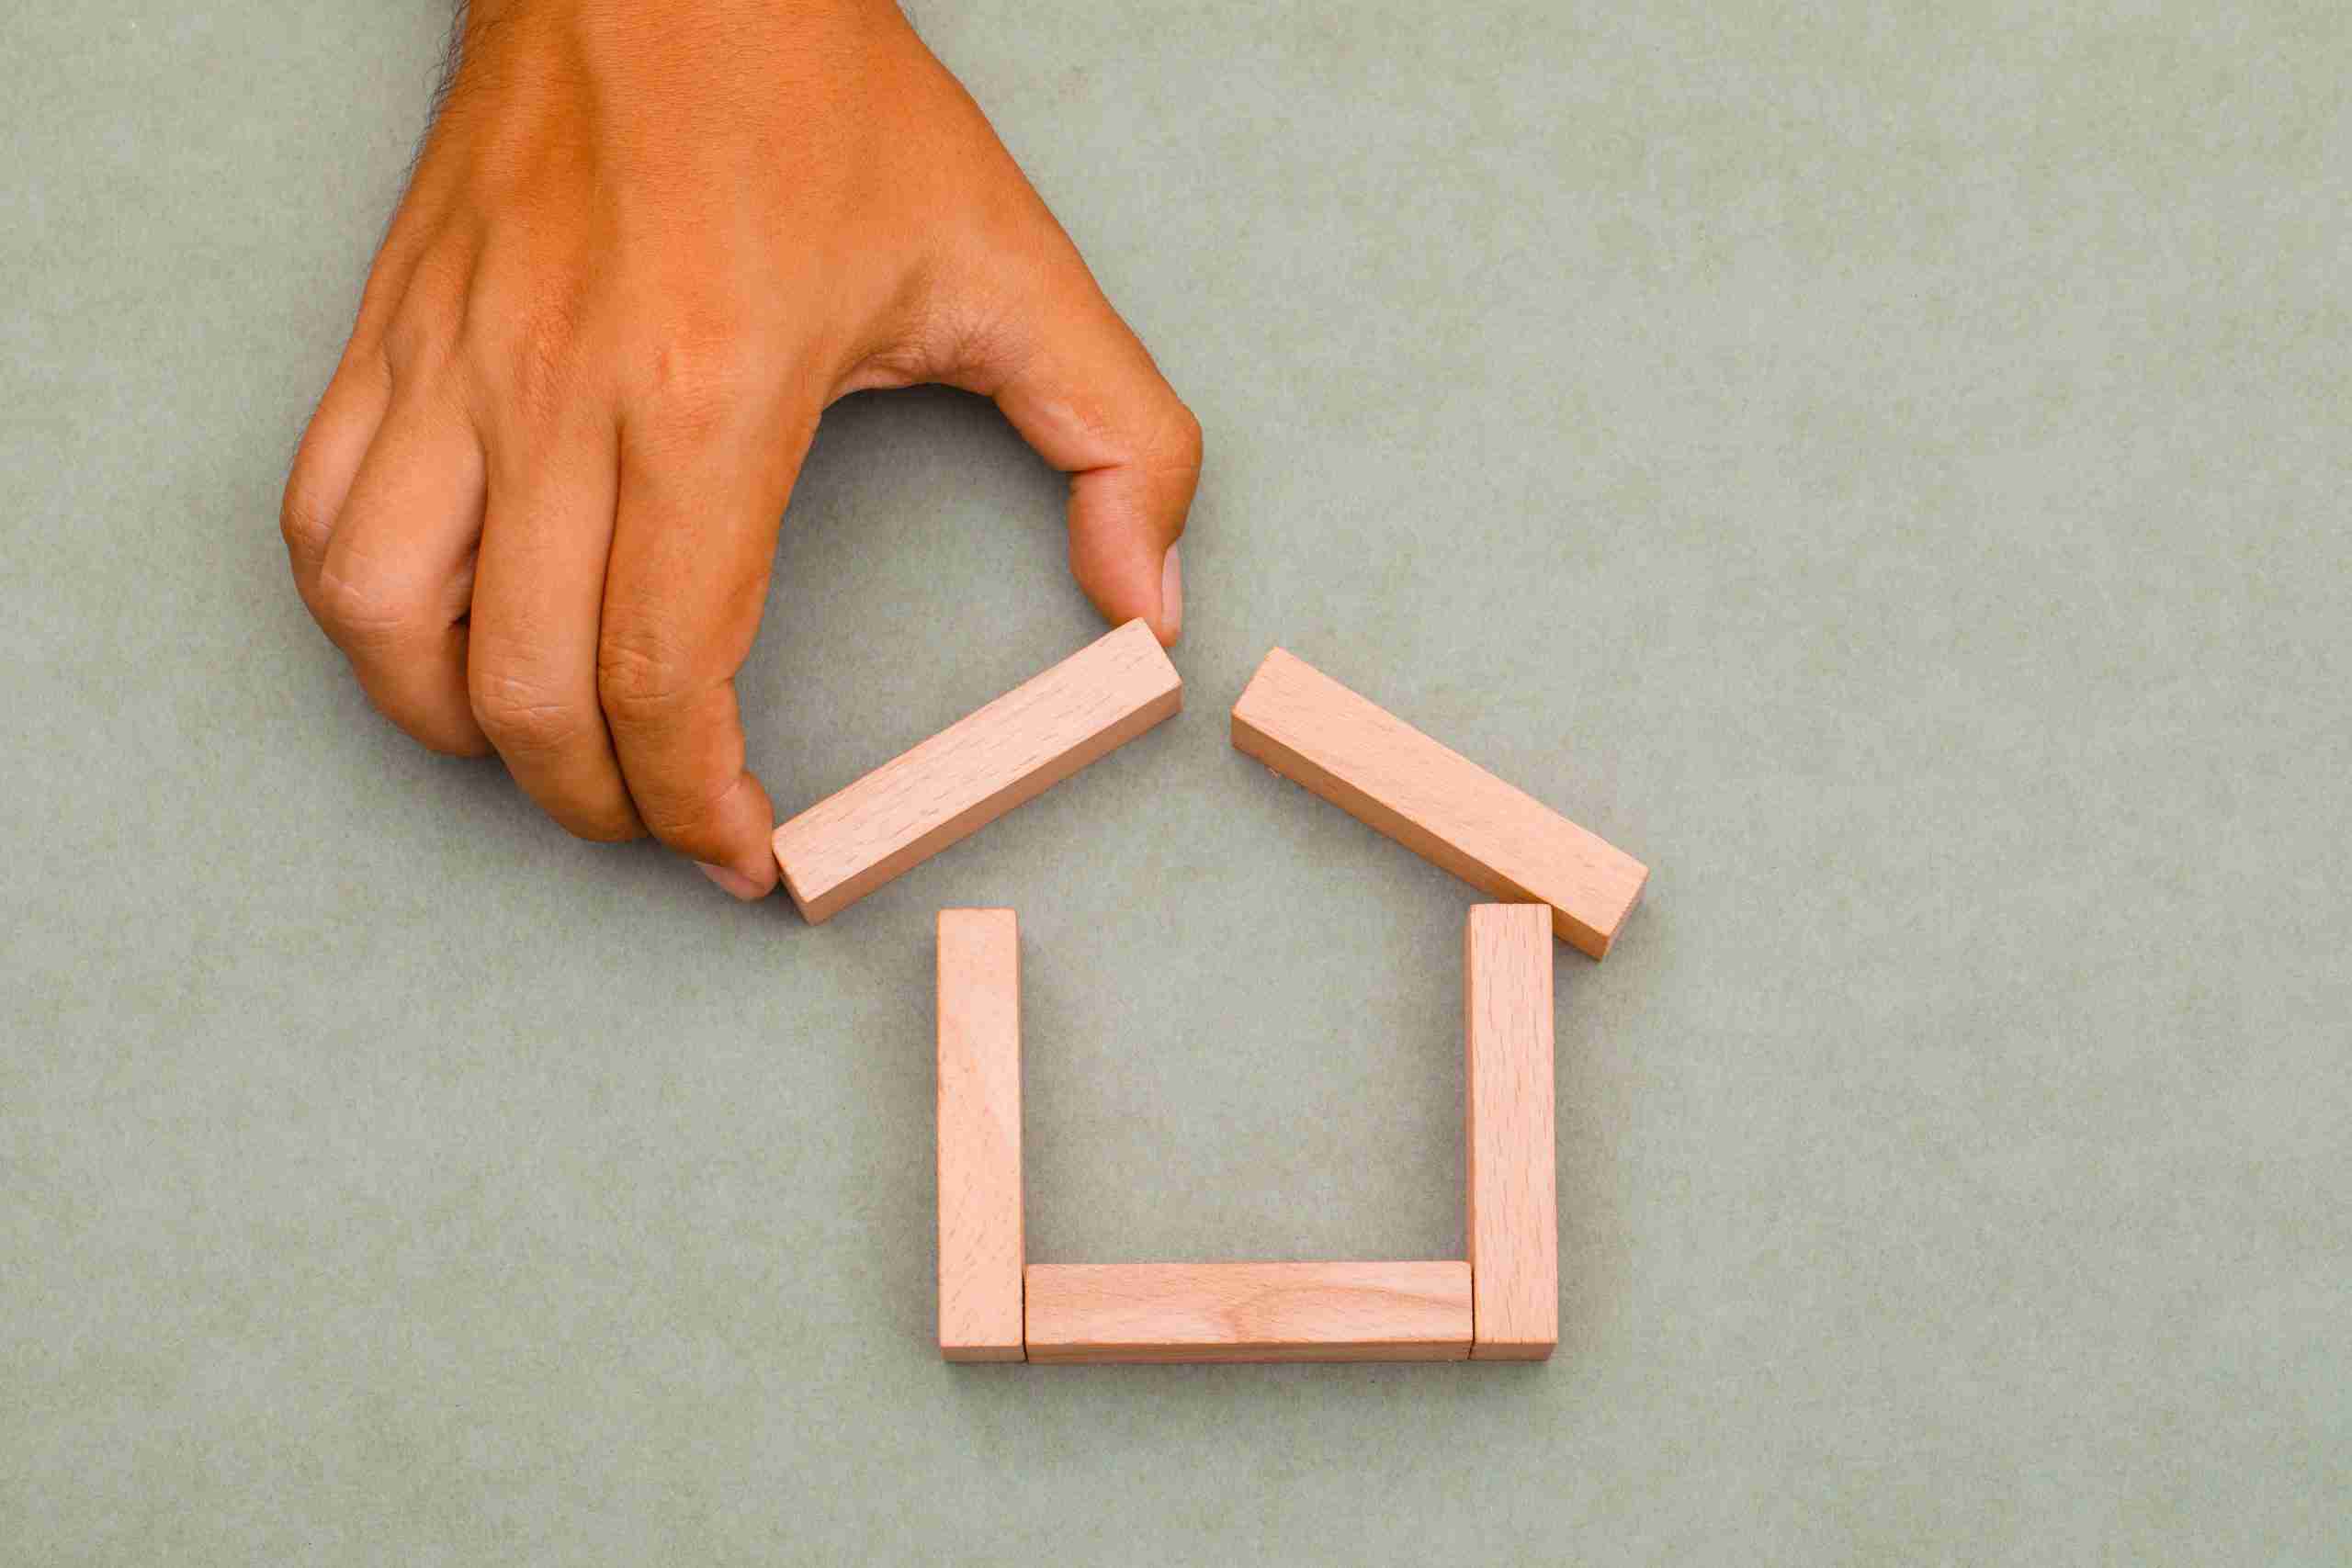 Una mano montando una casa con palos de madera sobre un fondo gris, representando la Nuda propiedad